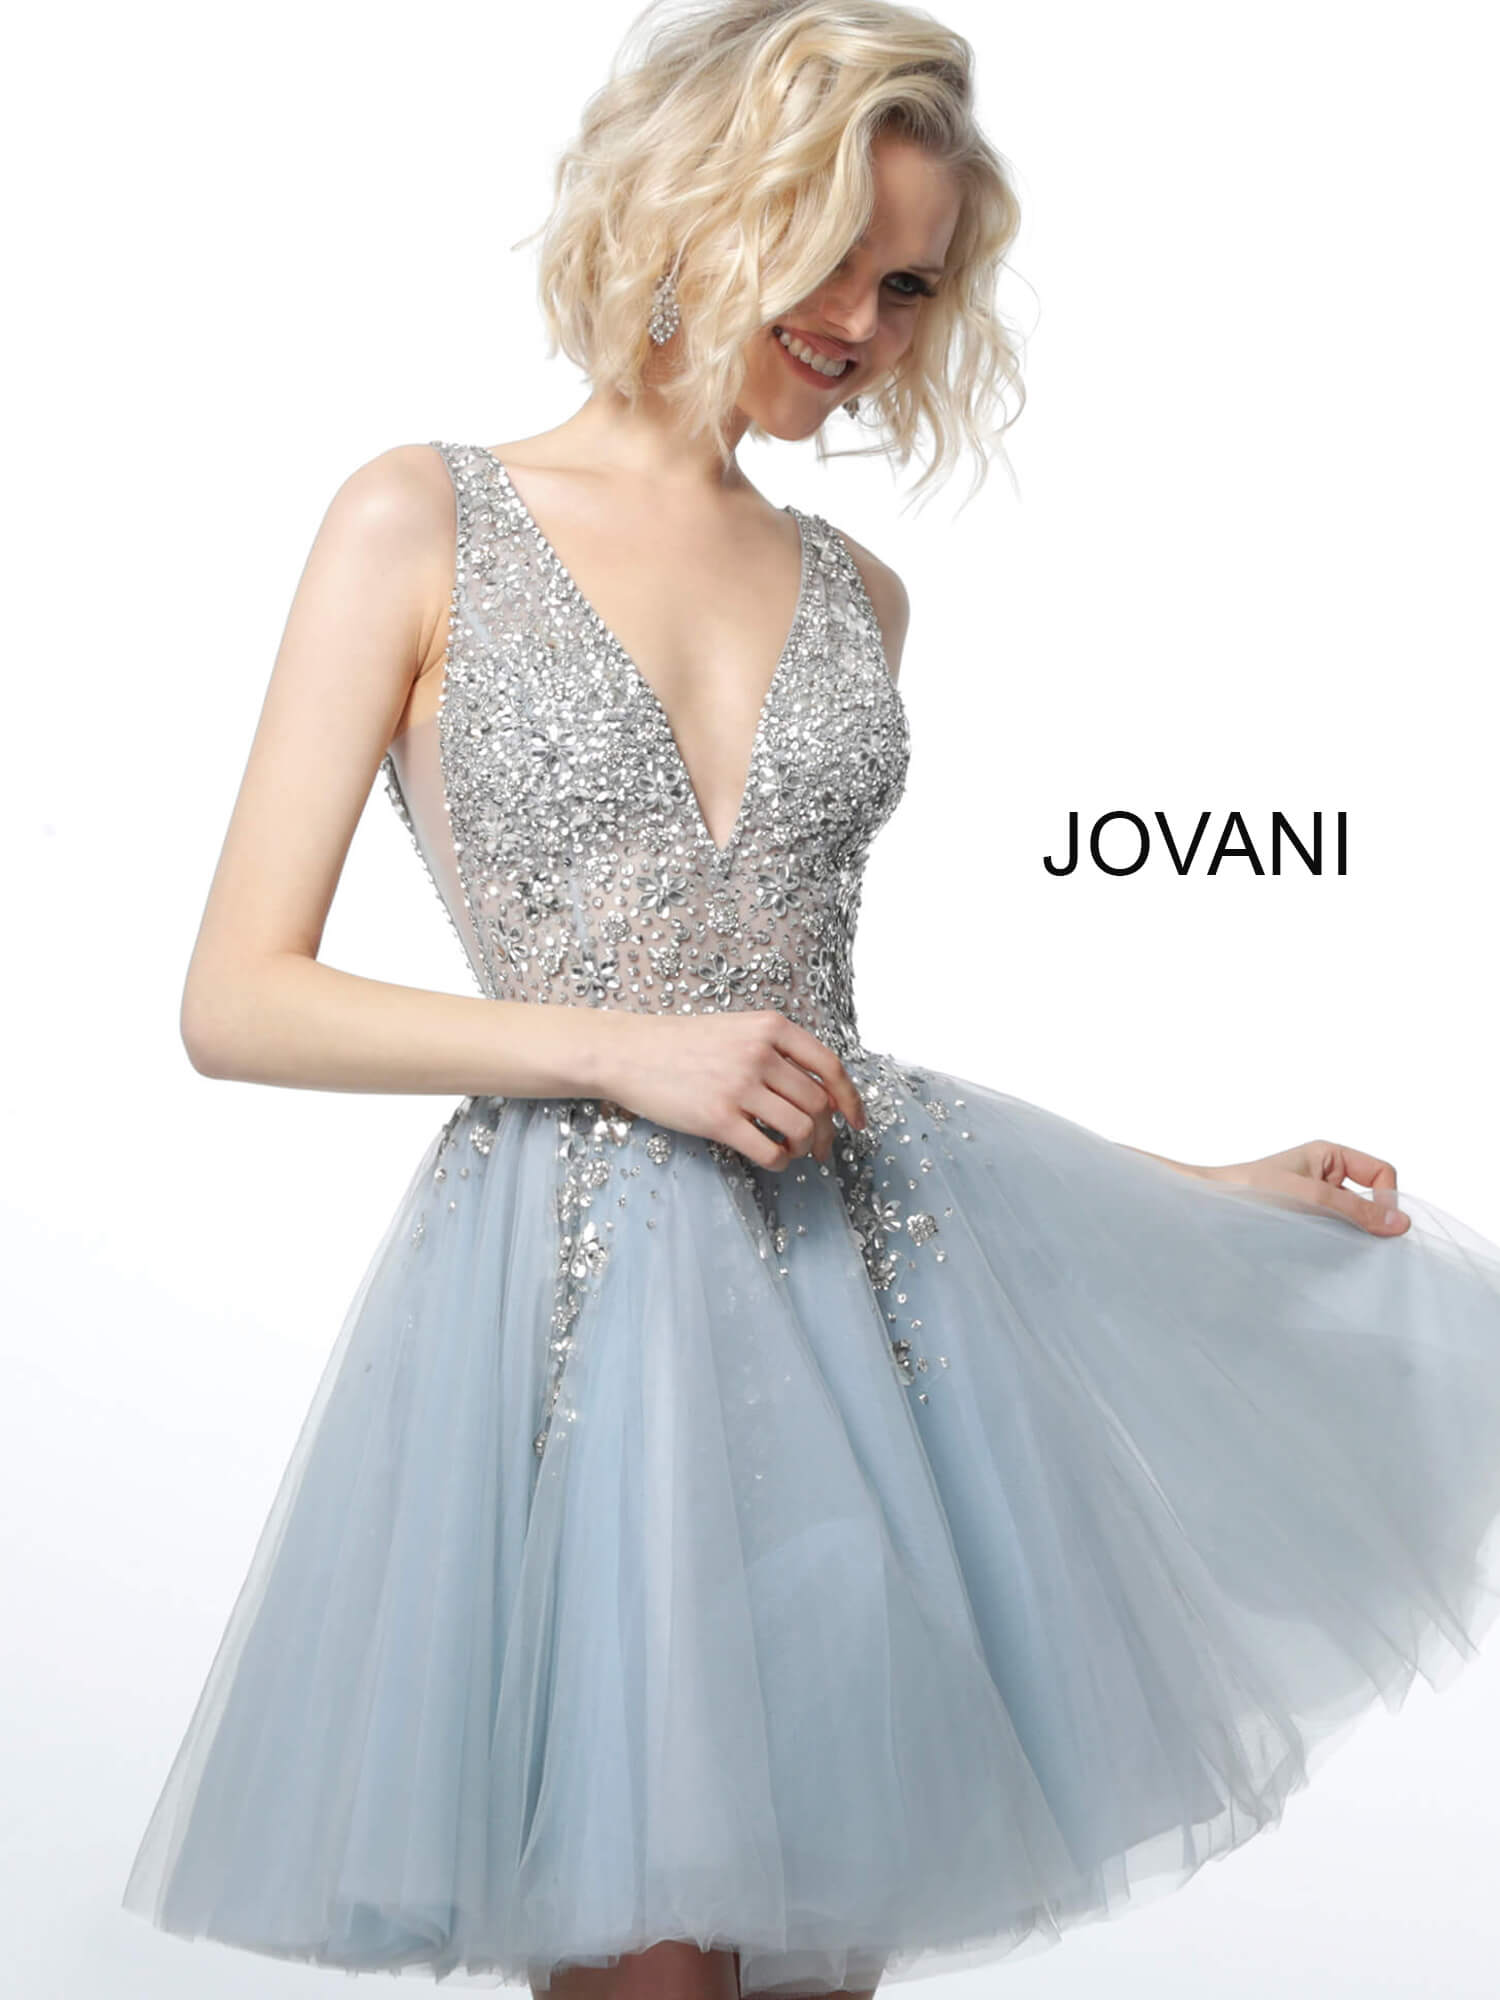 Jovani 1774 Light Blue Crystal Embellished Bodice Cocktail Dress 